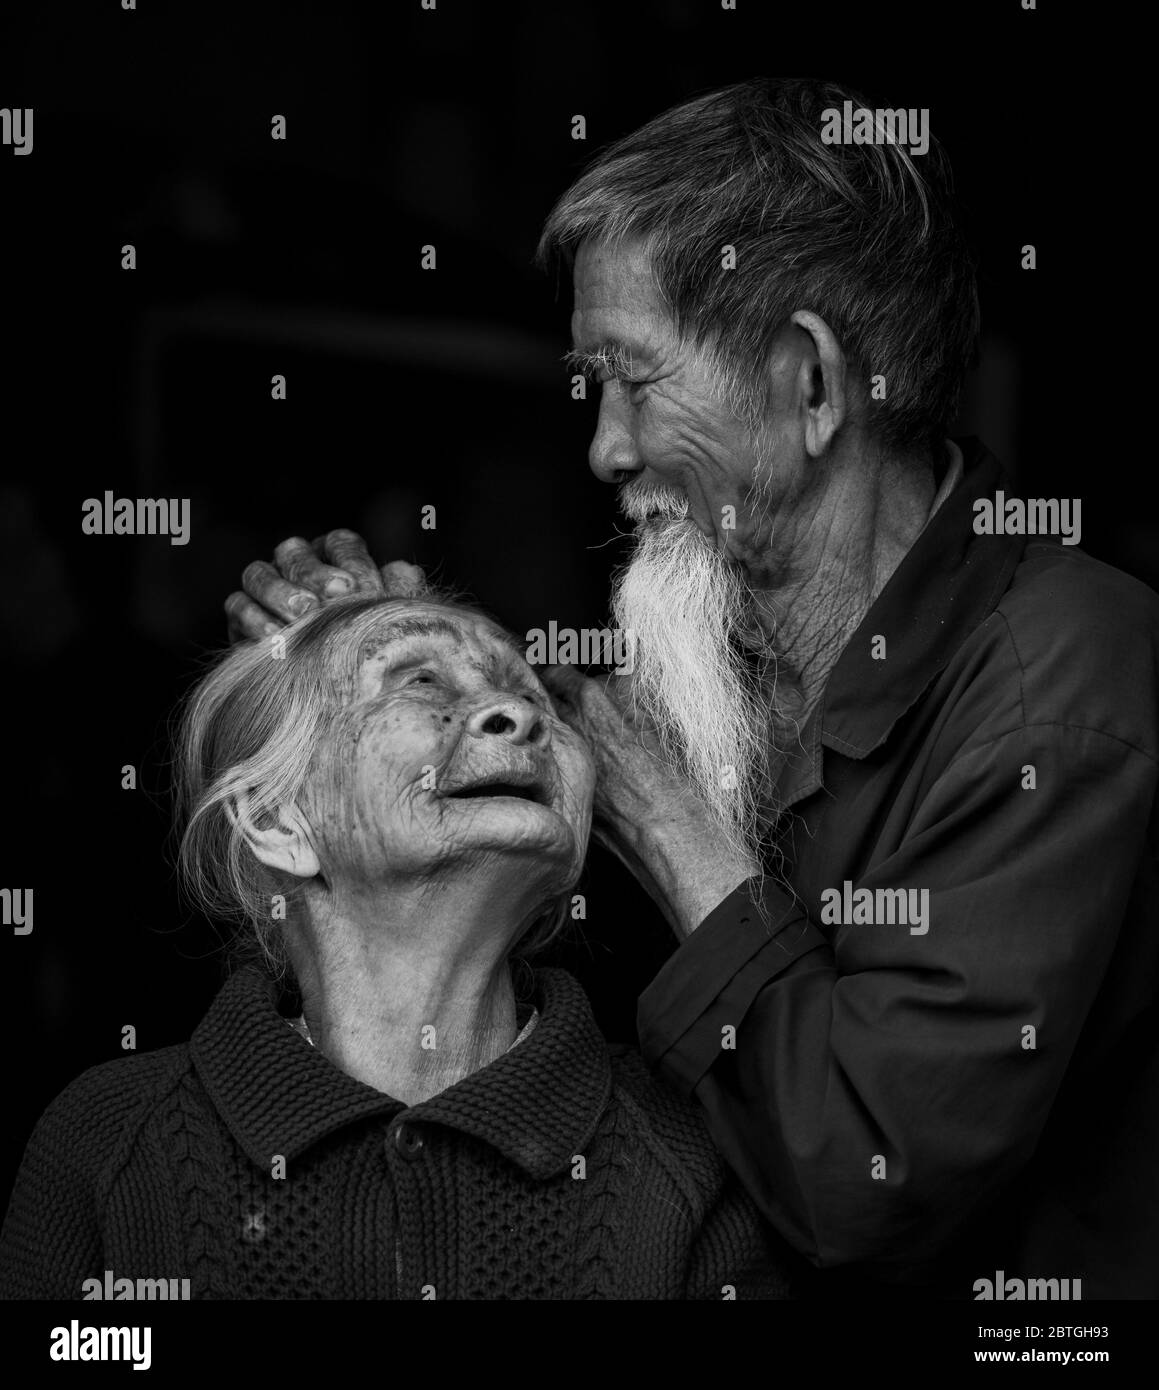 HOI AN - 10. MÄRZ 2018: Ein alter Mann, der am 10. März 2018 in Hoi an, Vietnam, sanft das Haar seiner Frau auf schwarzem Hintergrund festsetzt Stockfoto